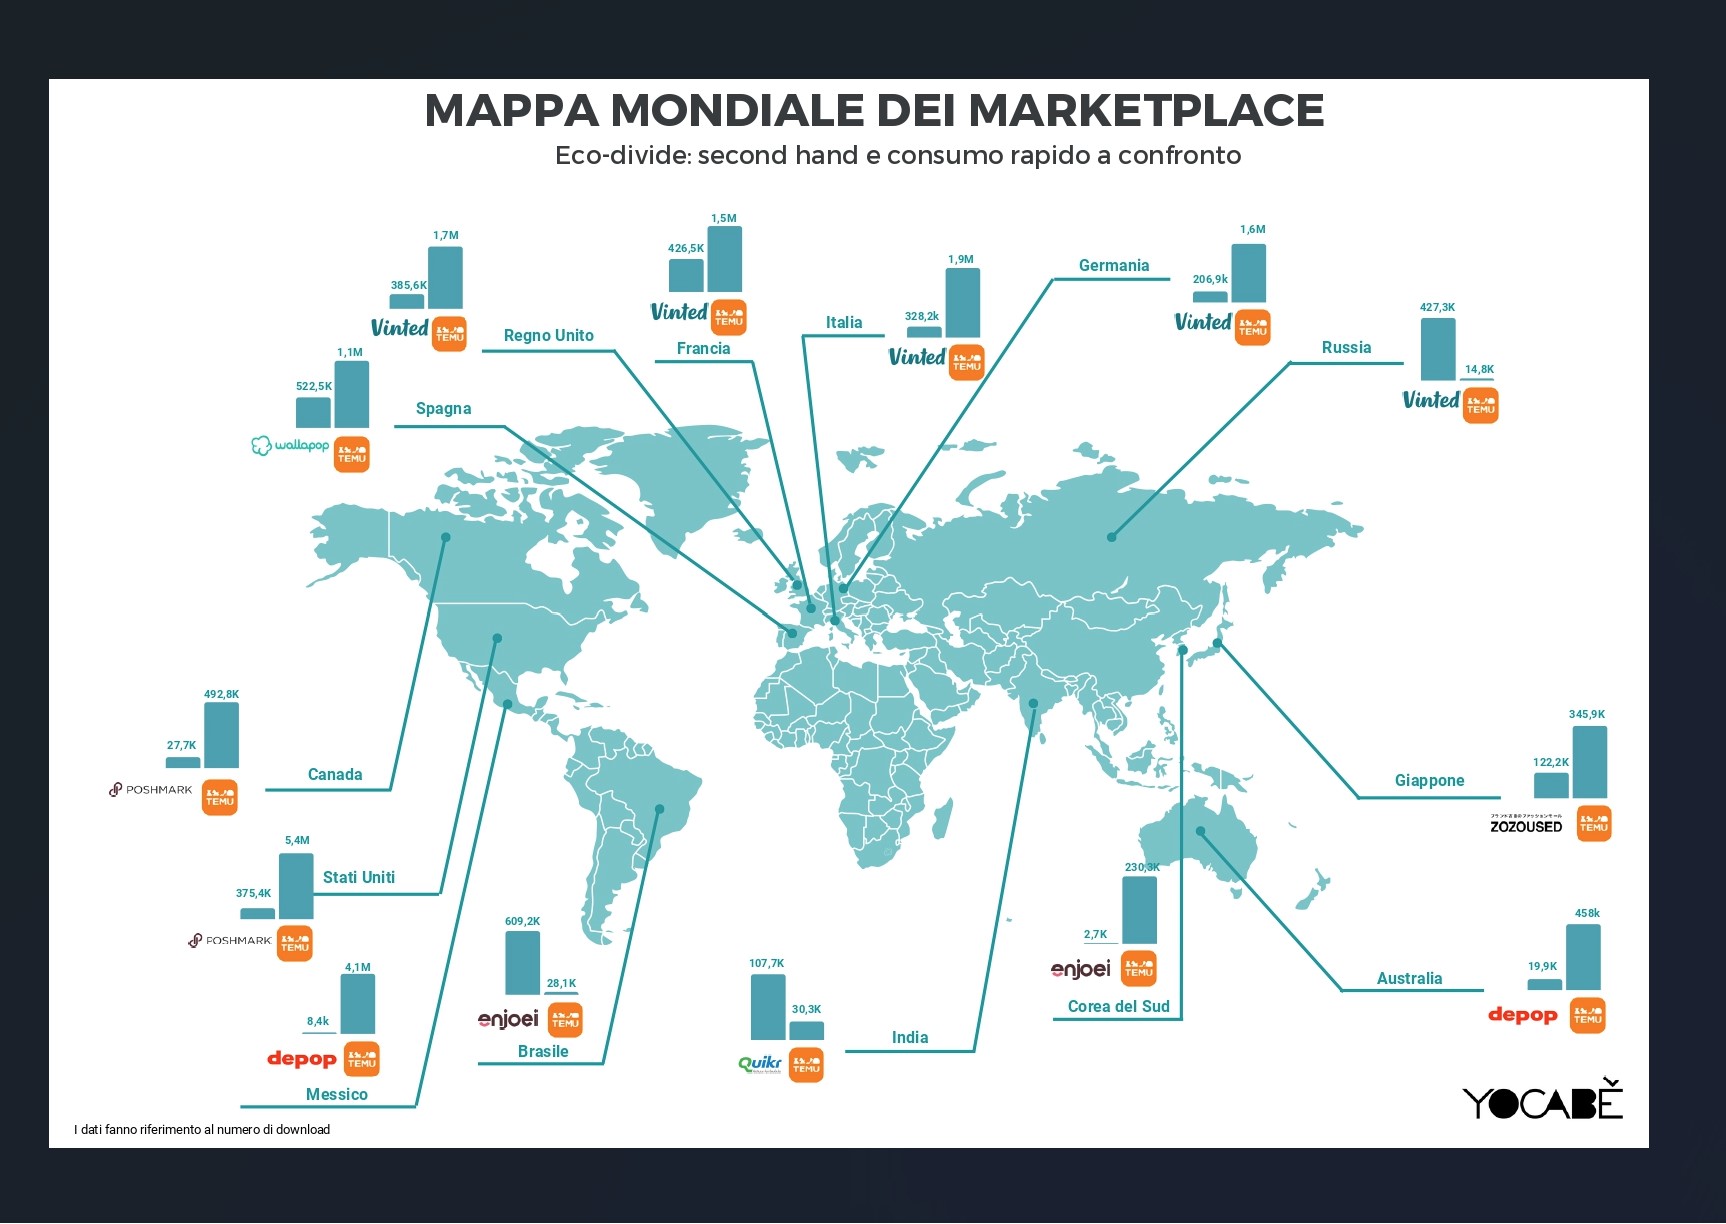 la mappa mdiale dei marketplace per lo shopping online di Yocabè